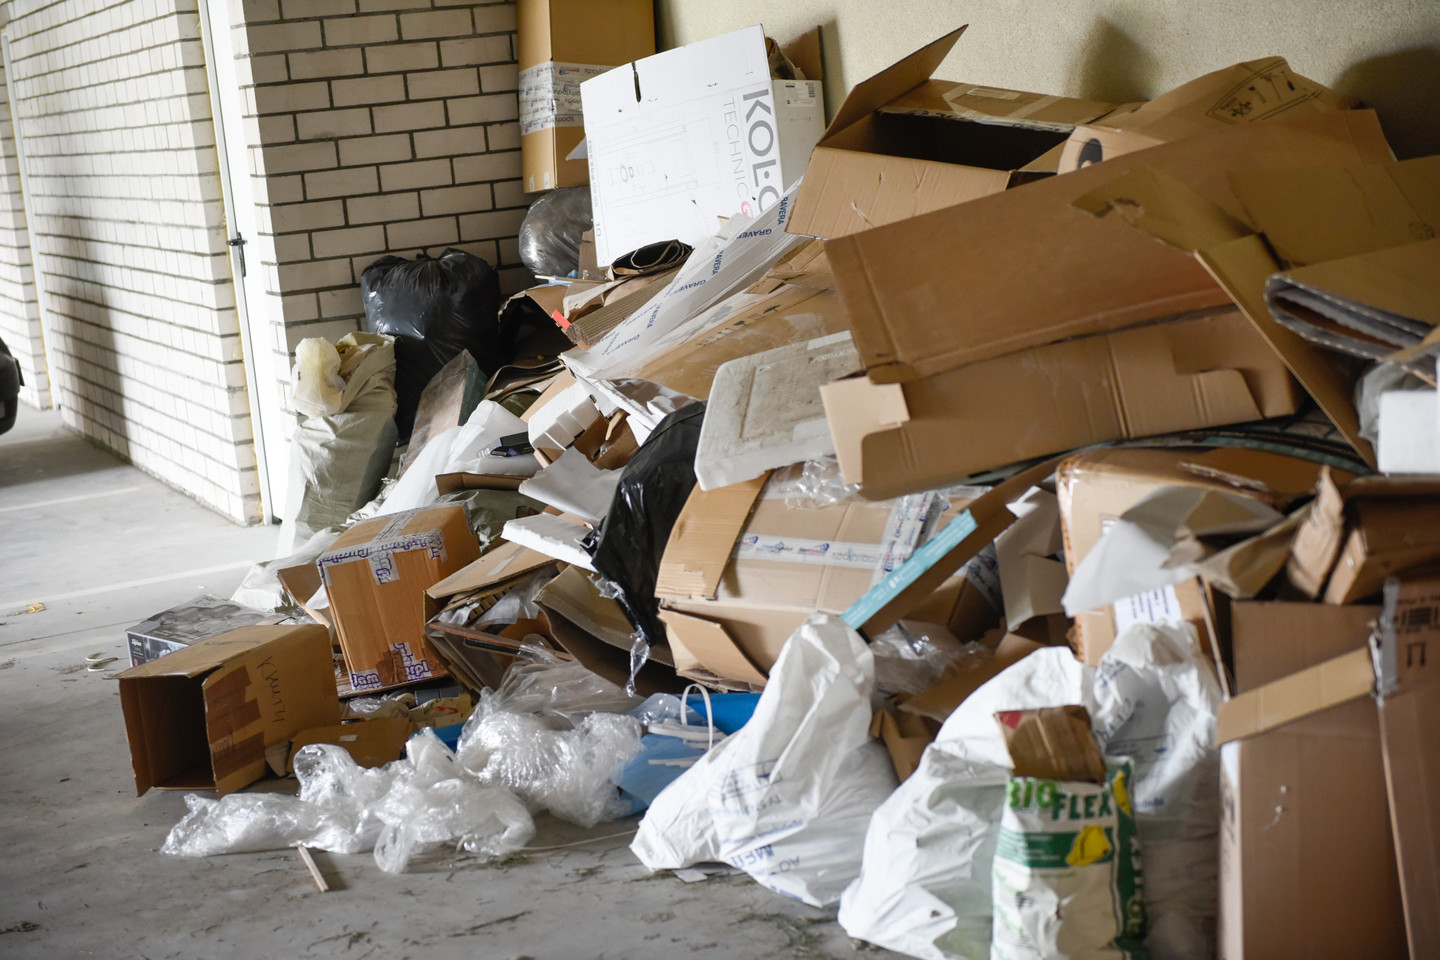 Šiukšlės garaže: tokios atliekos, jei tik būtų tinkamai surūšiuotoms, į sąvartyną nepatektų – popierius yra perdirbamas.  <br>D.Umbraso nuotr. 